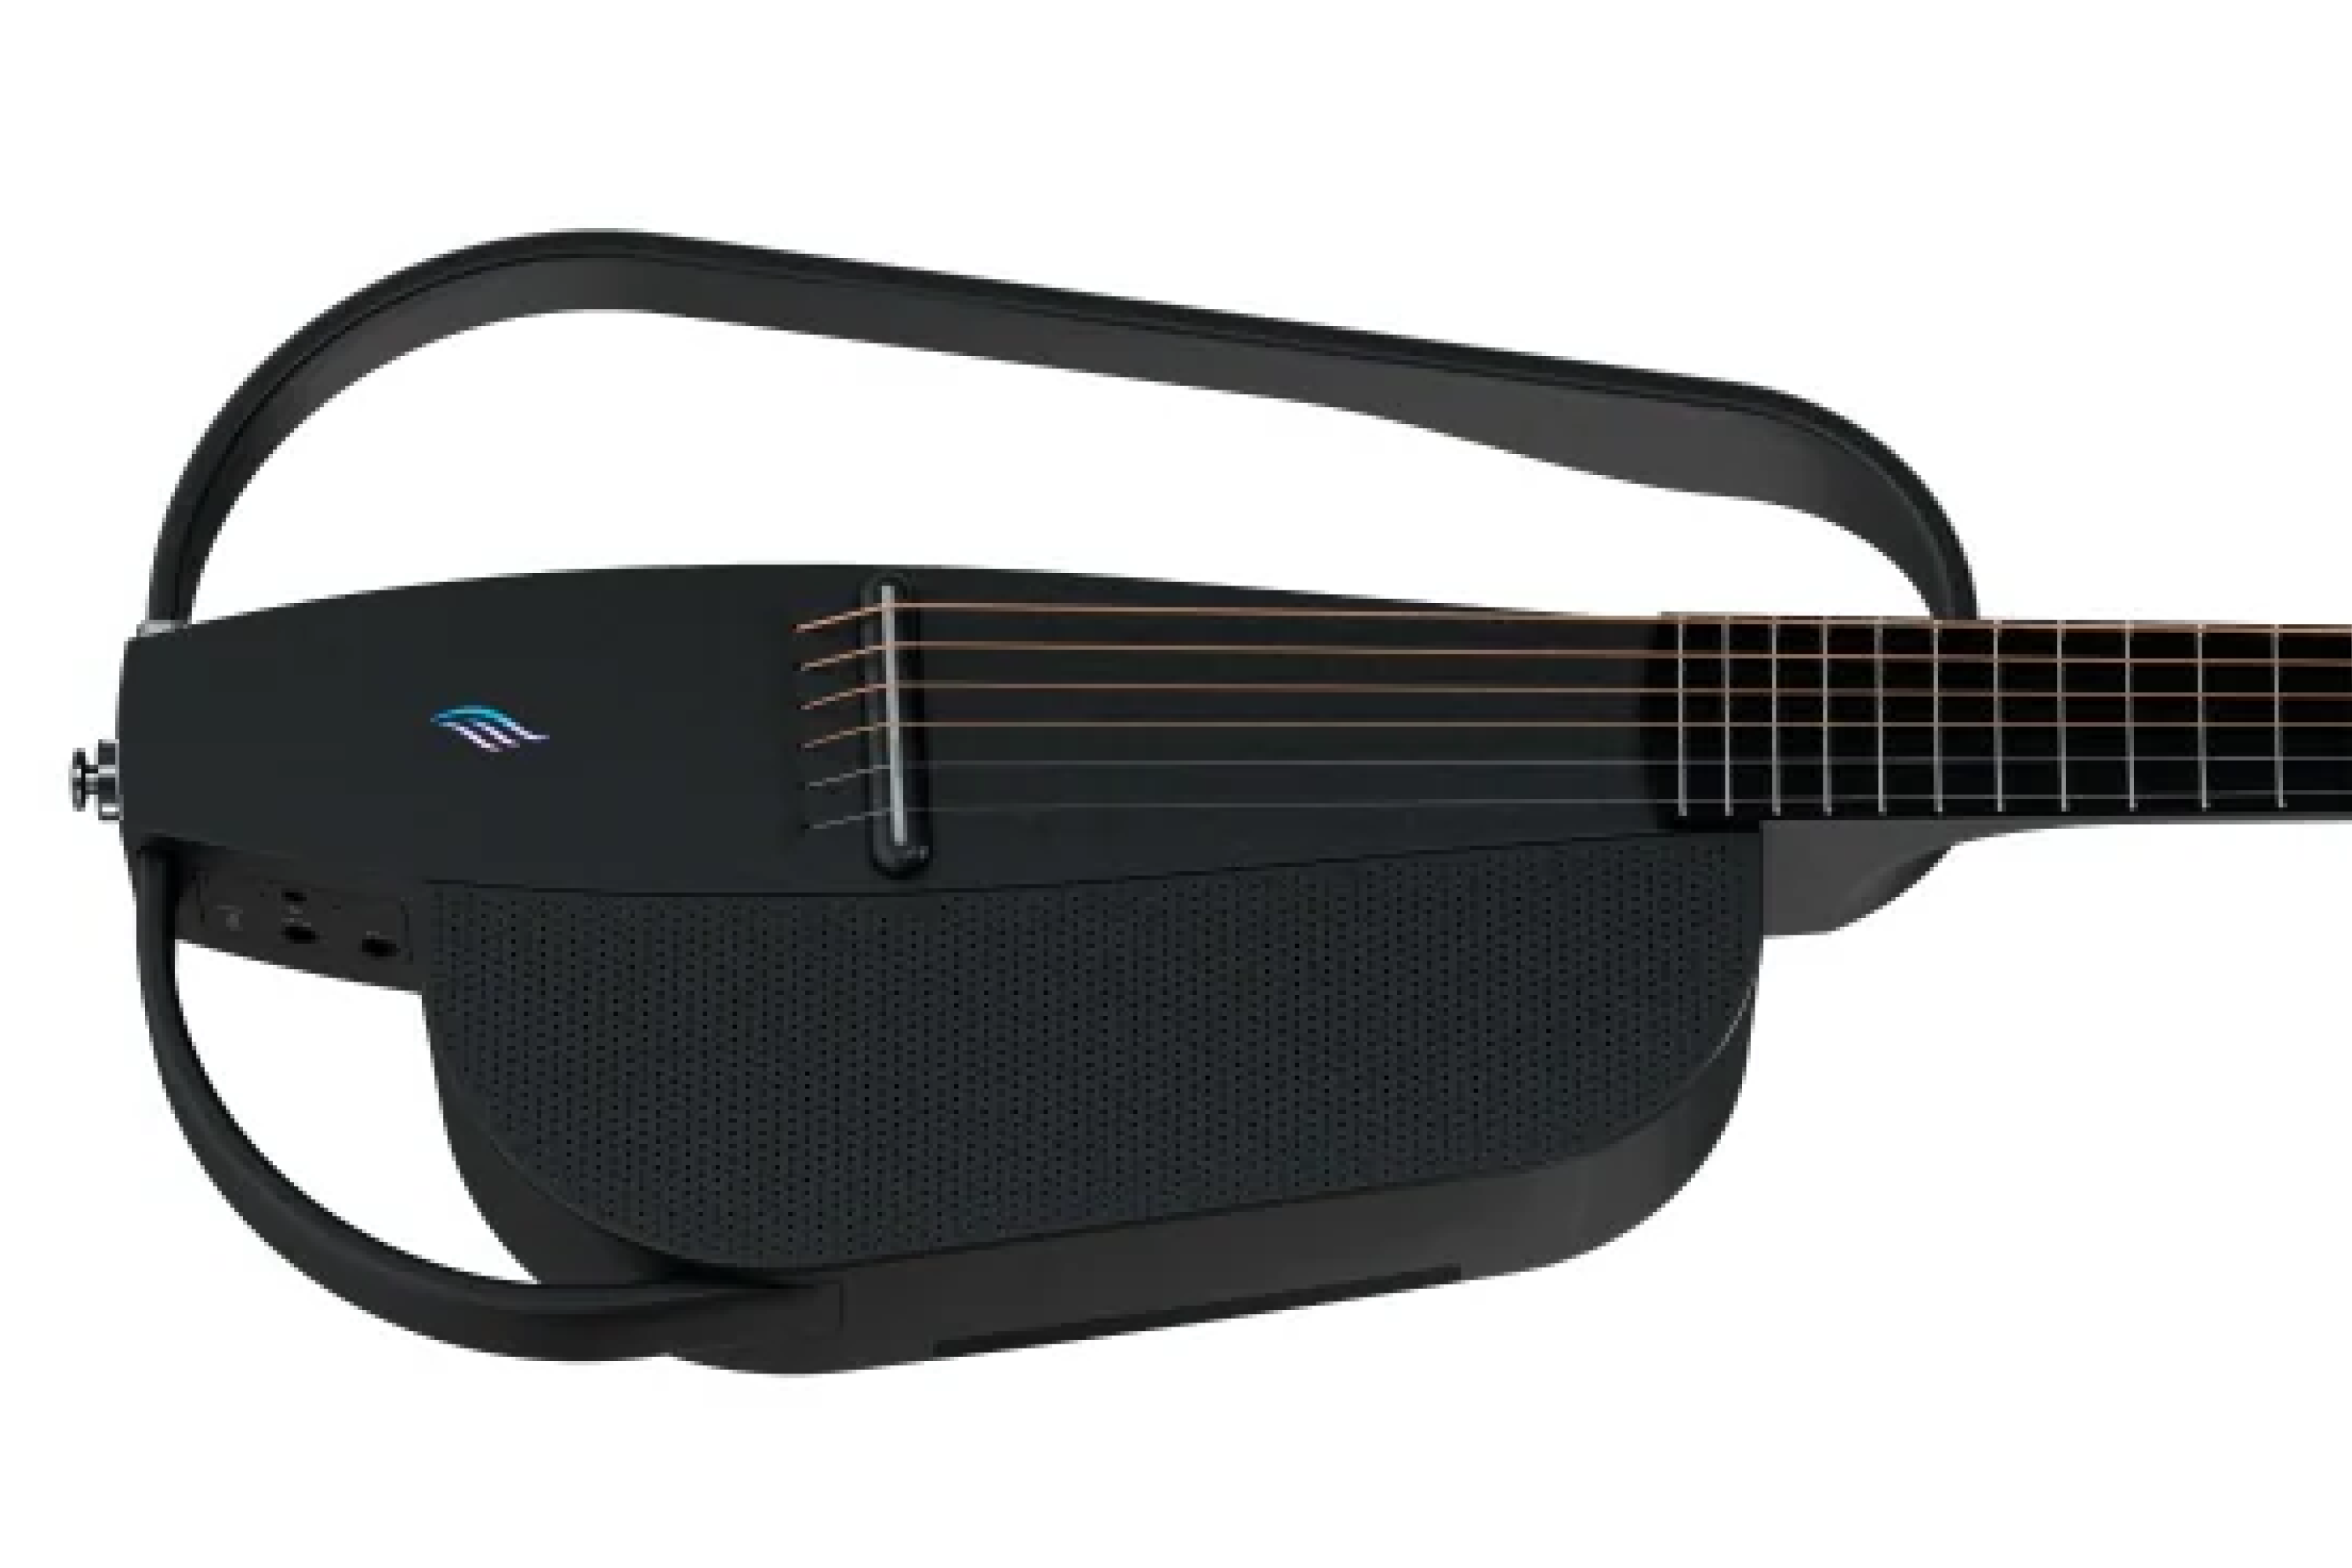 Enya NEXG 2 All-in-One Smart Audio Loop Guitar - Black